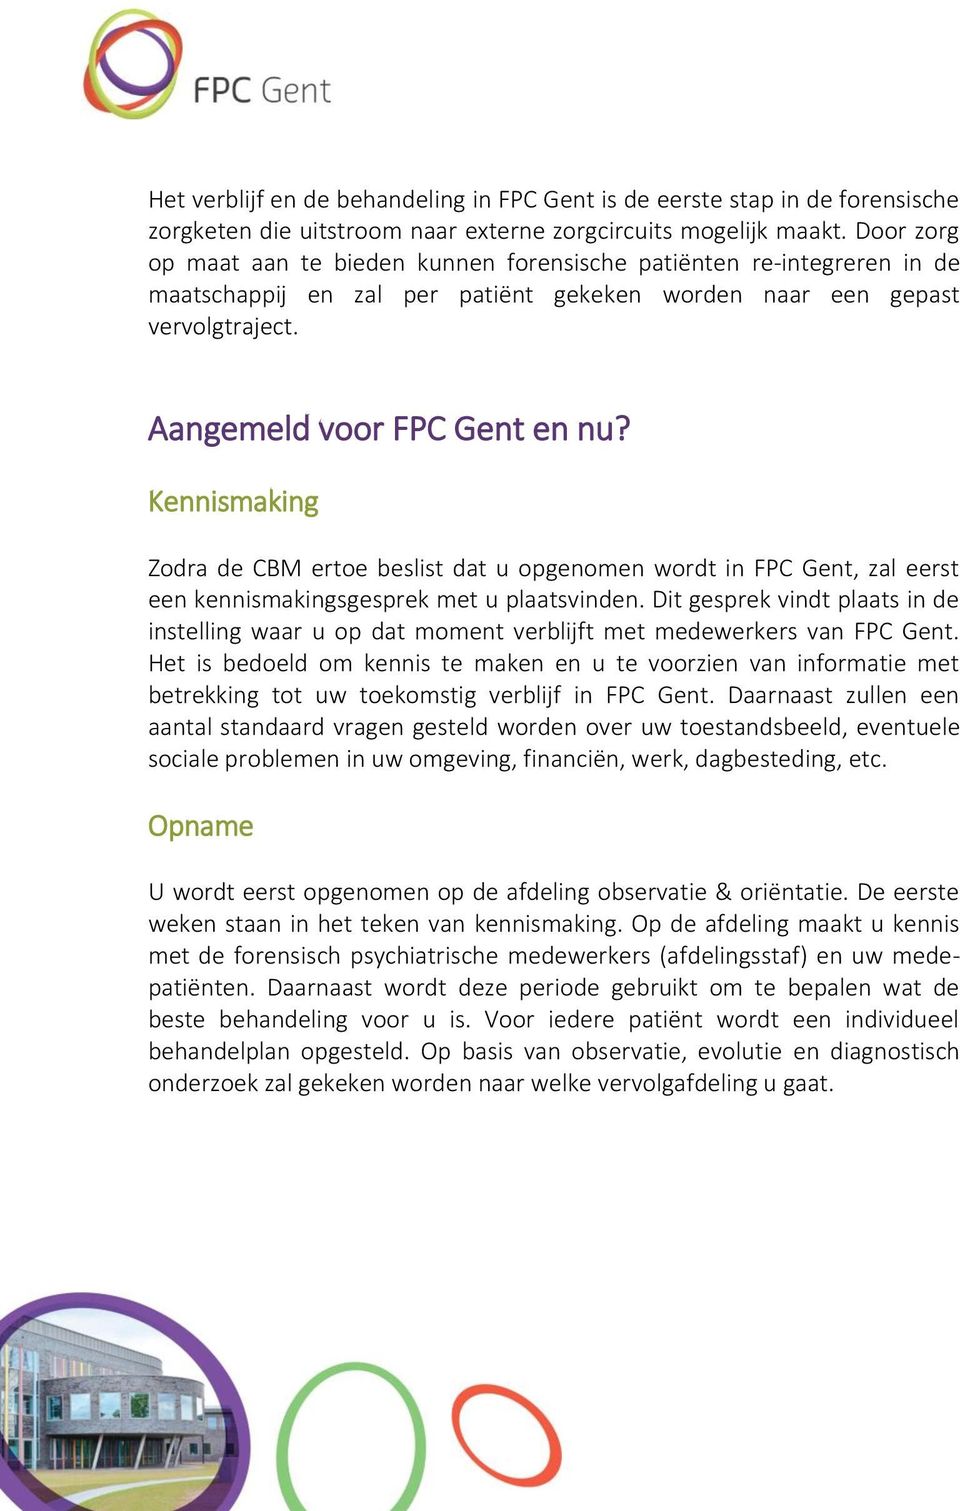 Kennismaking Zodra de CBM ertoe beslist dat u opgenomen wordt in FPC Gent, zal eerst een kennismakingsgesprek met u plaatsvinden.